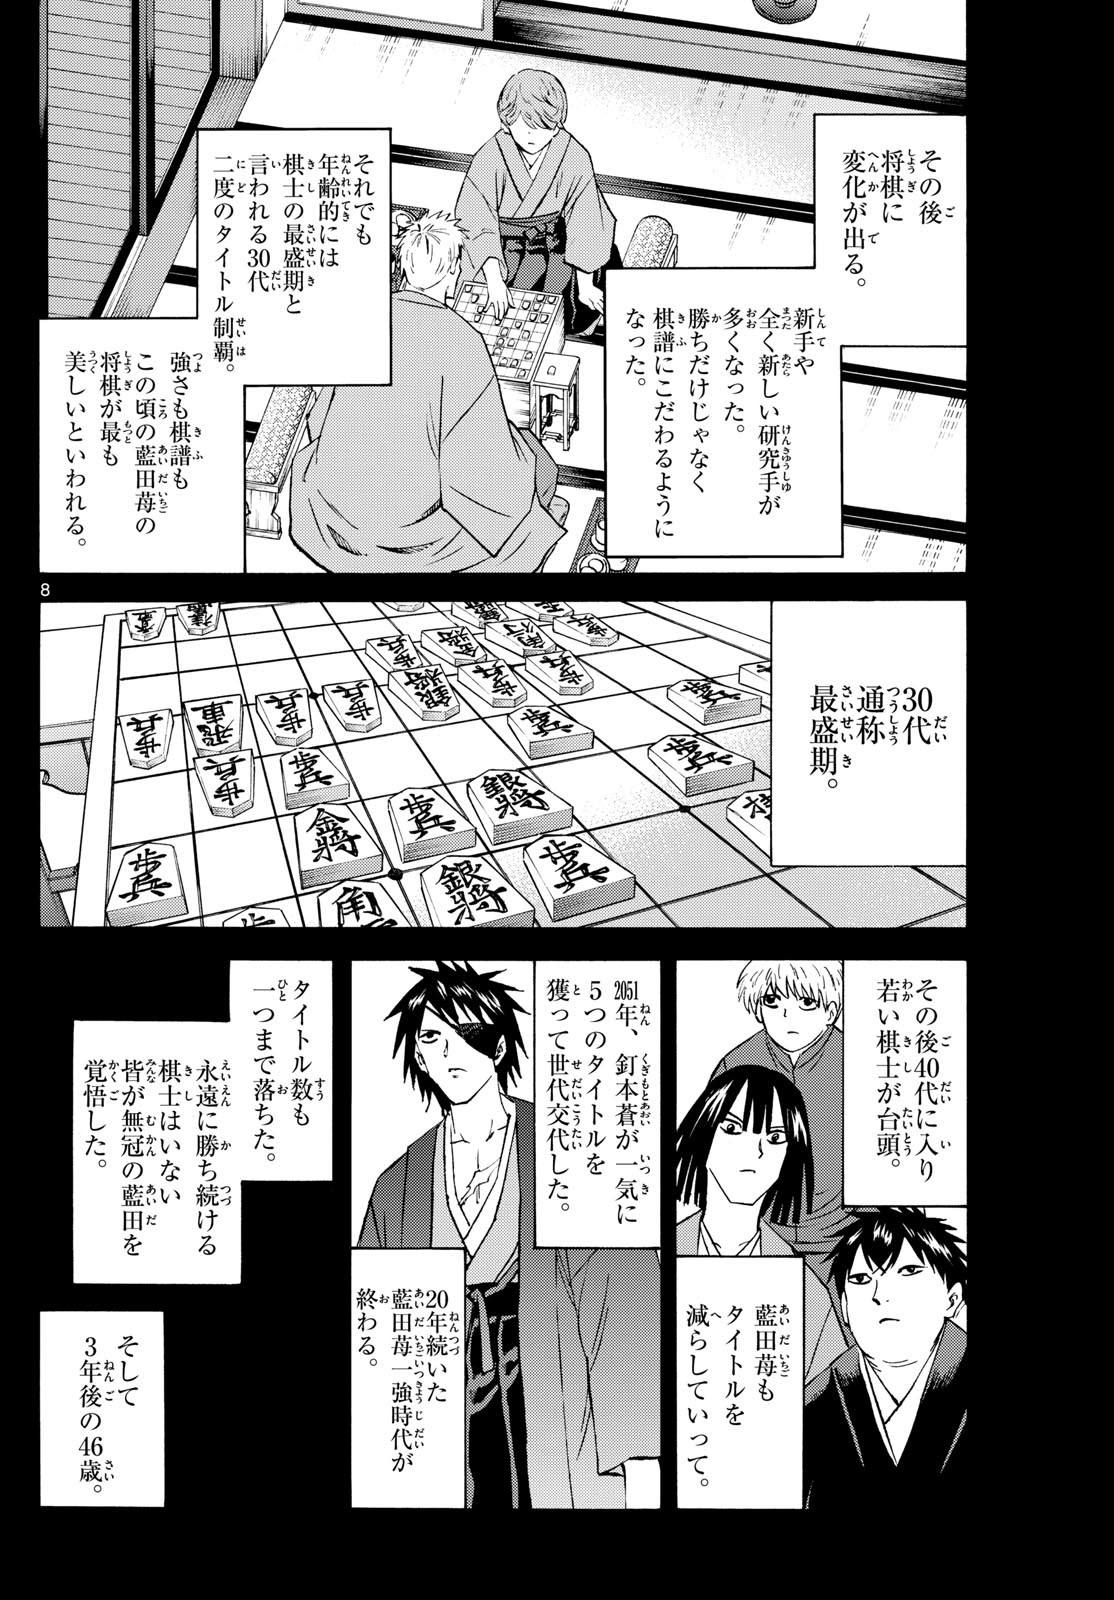 Ryu-to-Ichigo - Chapter 200 - Page 8